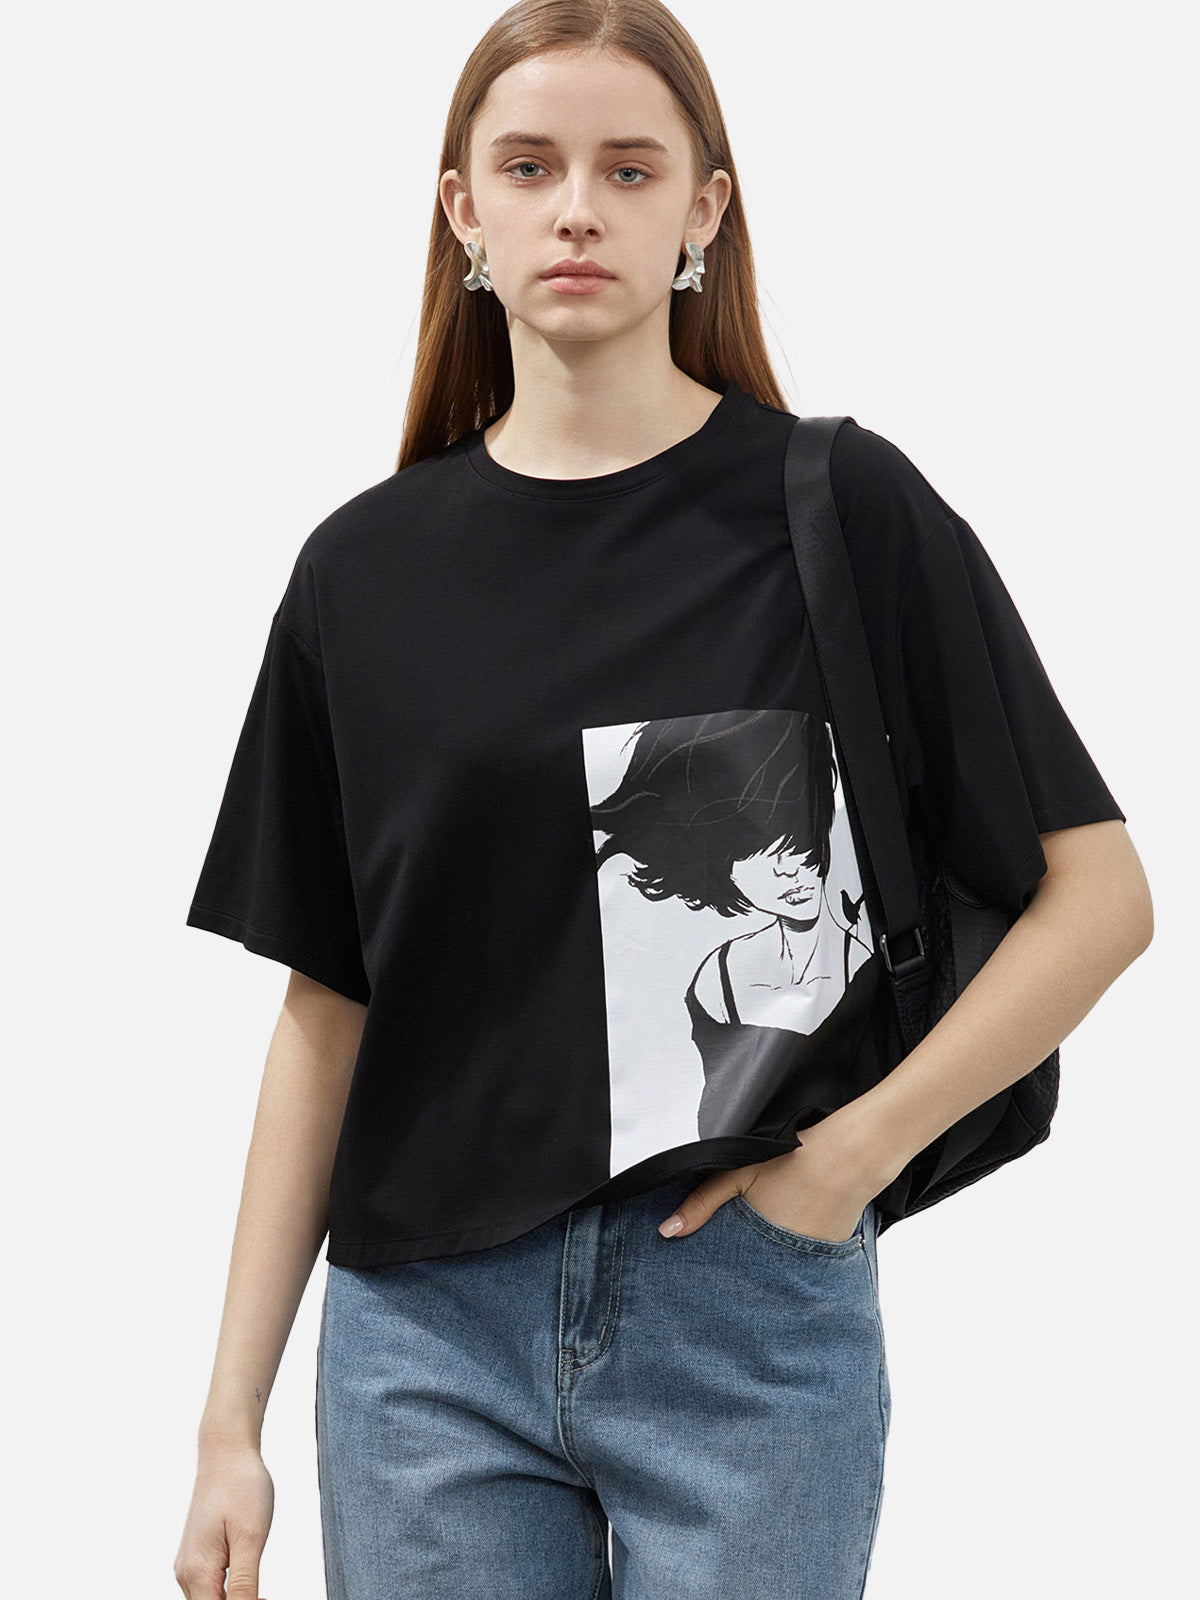 Camiseta corta holgada con estampado de anime